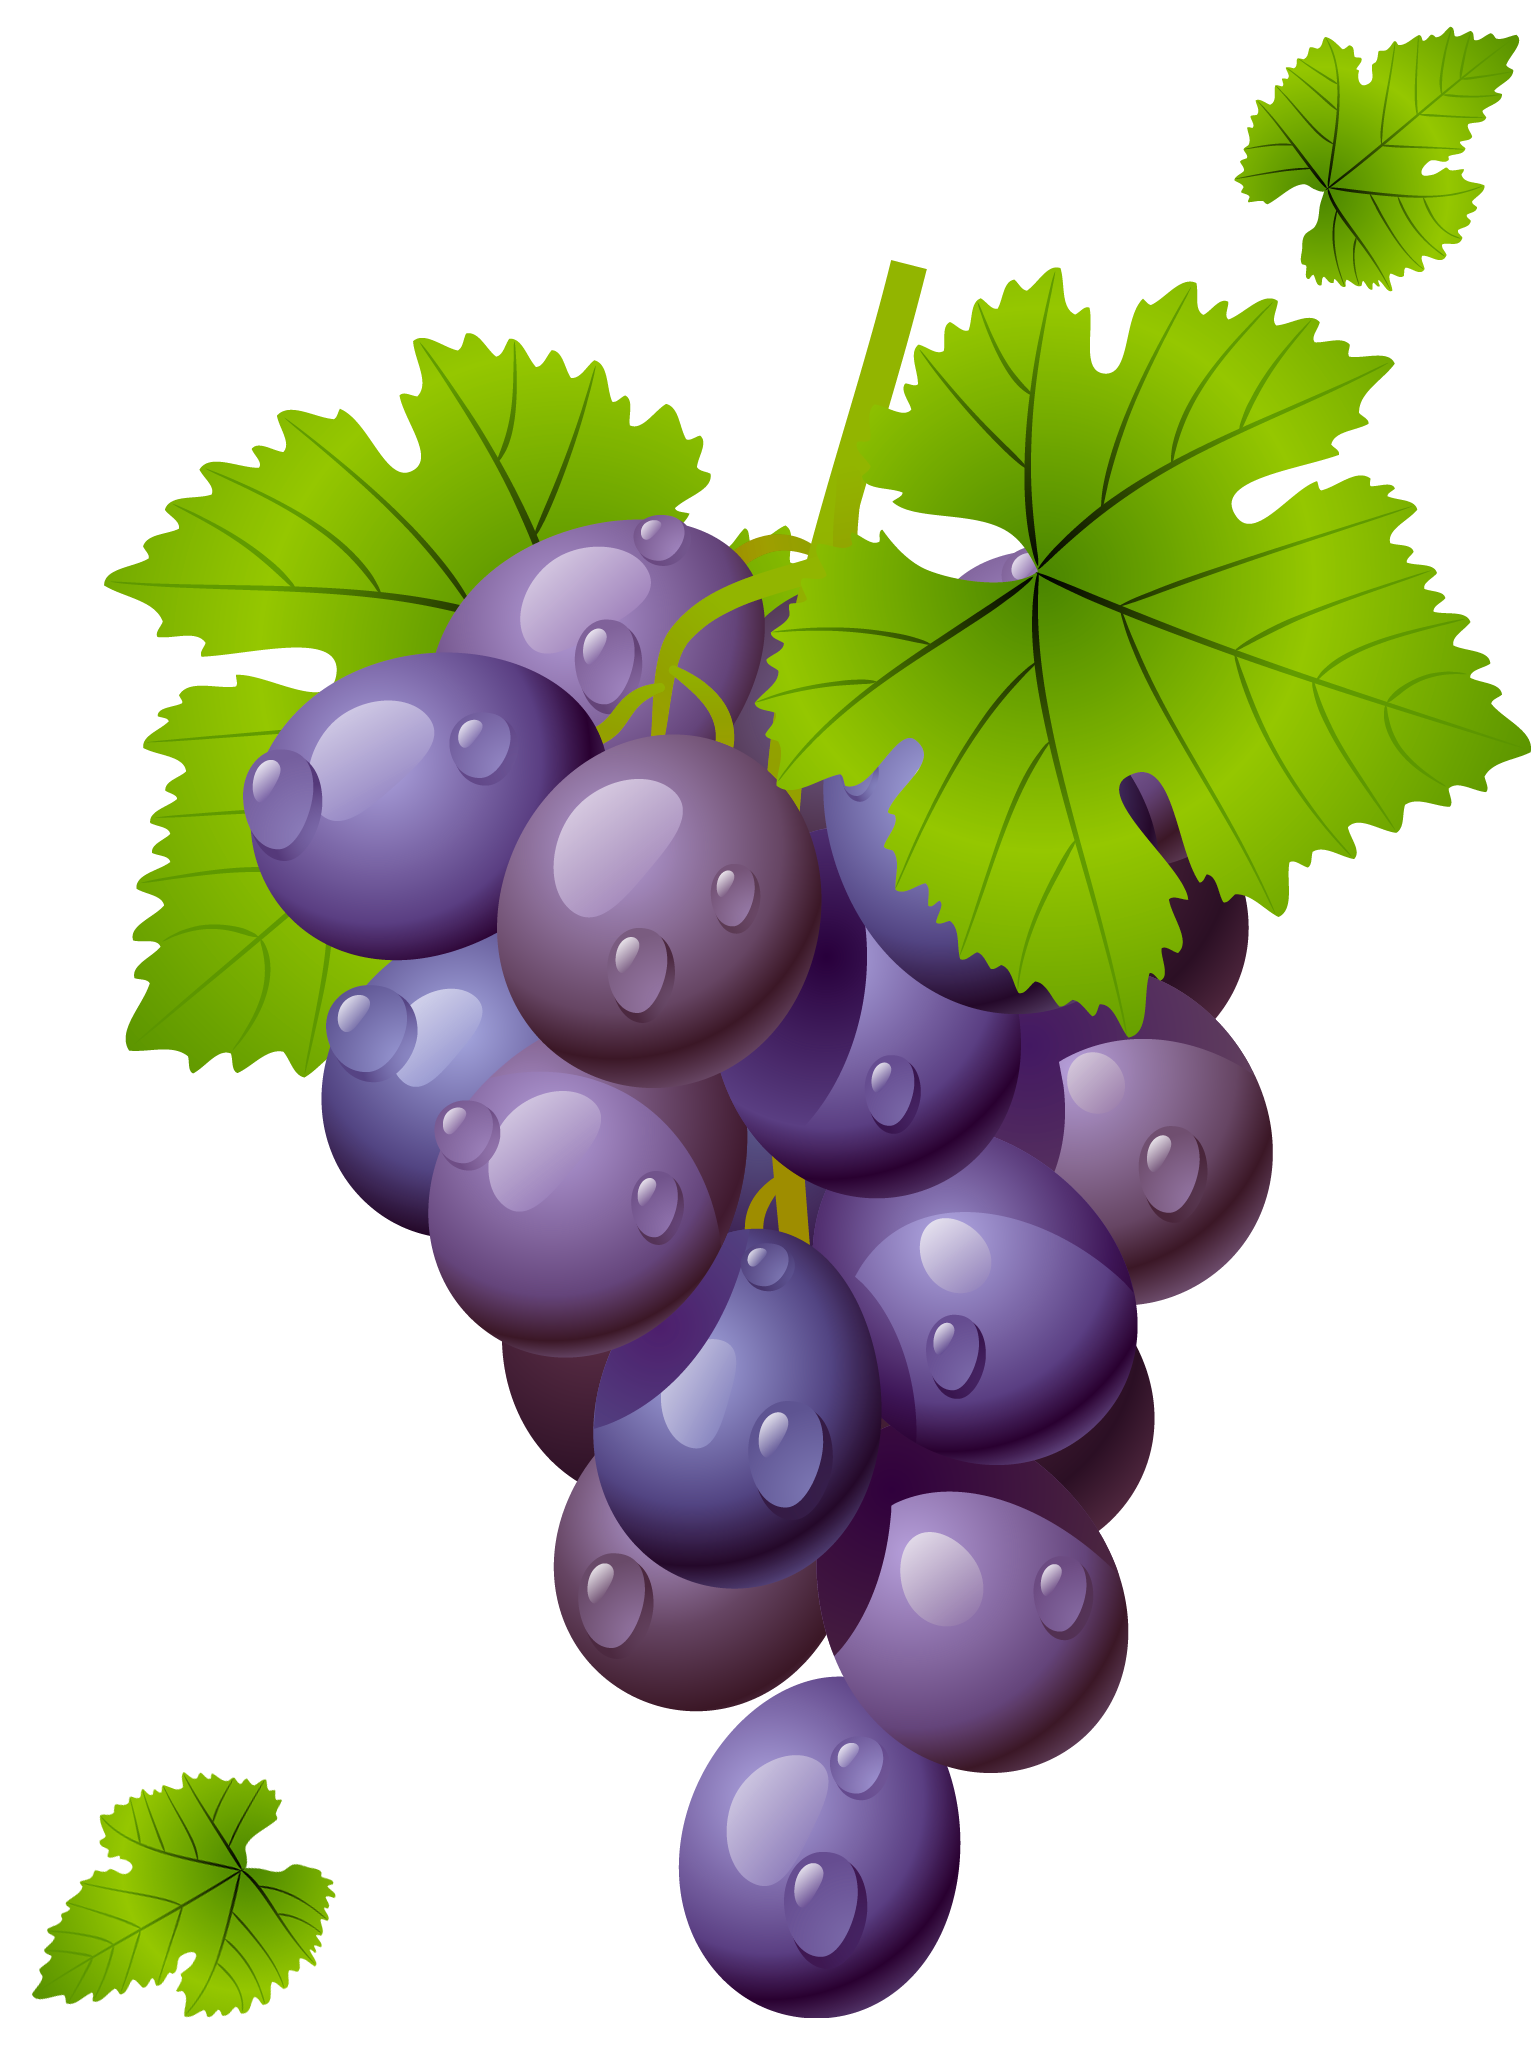 Grapes Grape Grapeclipart Fruit Photo Transparent Image Clipart